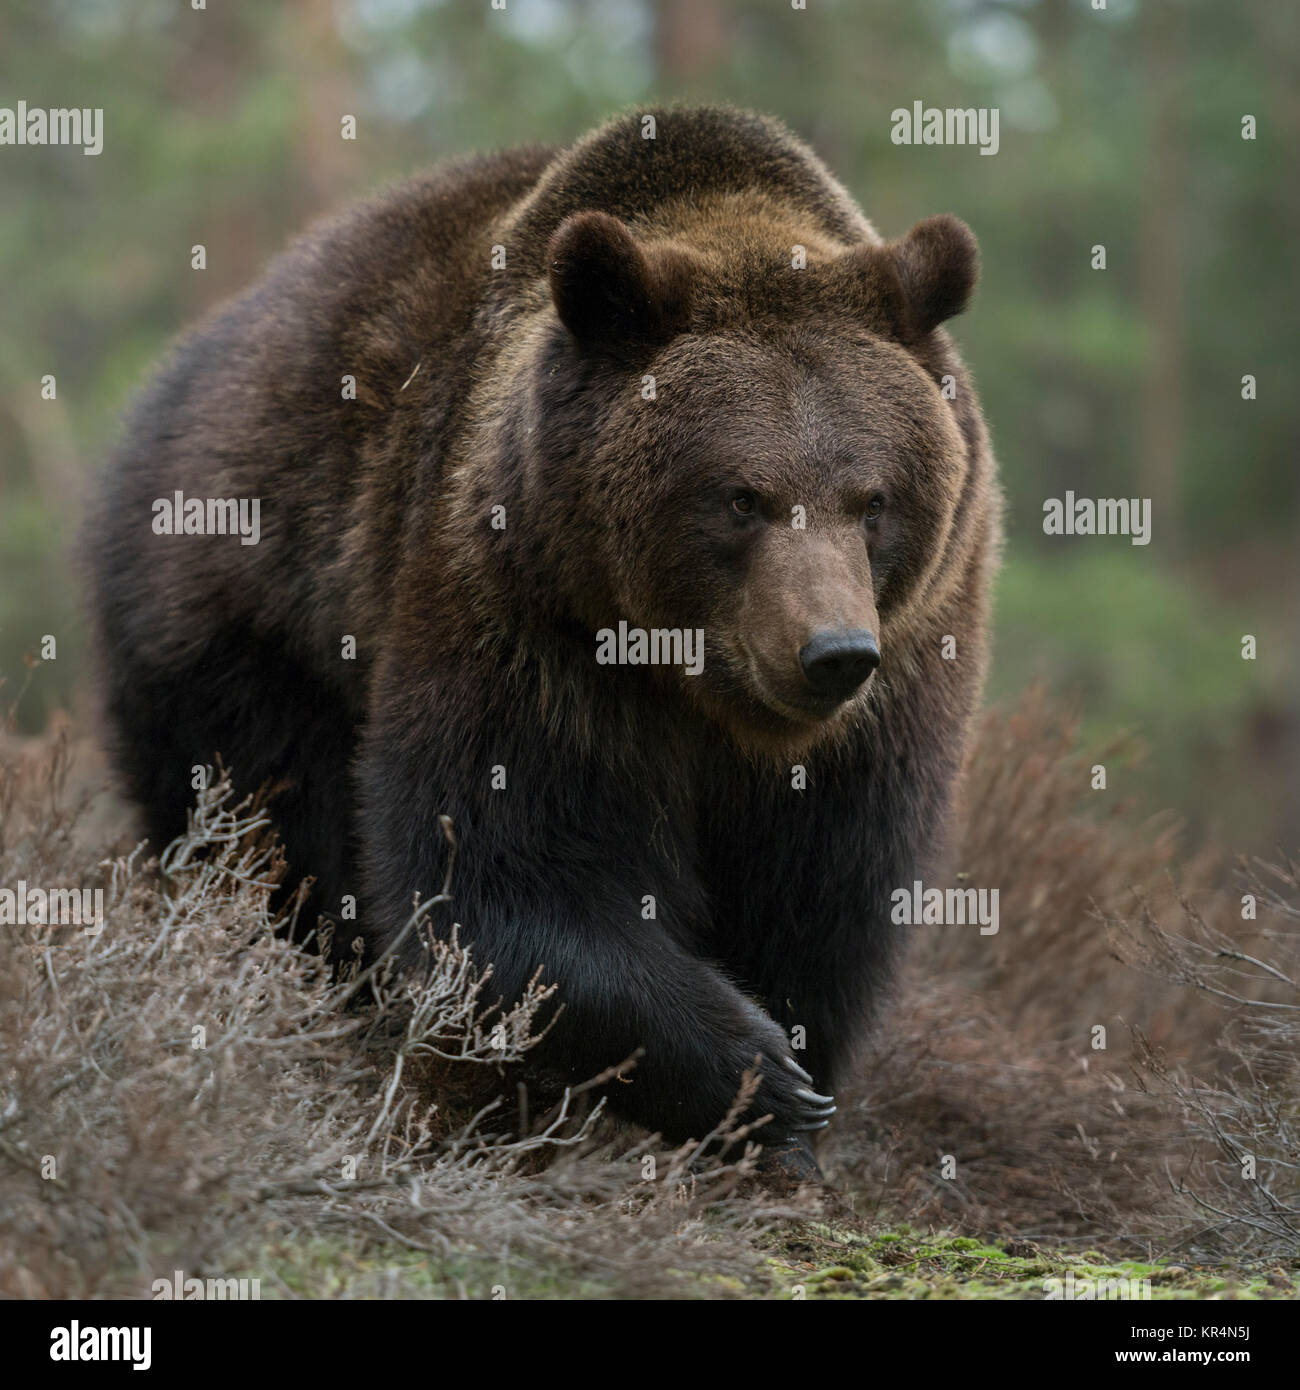 Orso bruno / Braunbär ( Ursus arctos ) a piedi attraverso gli arbusti in una foresta, guarda arrabbiato, pericoloso incontrare, enormi zampe, frontale side shot, l'Europa. Foto Stock